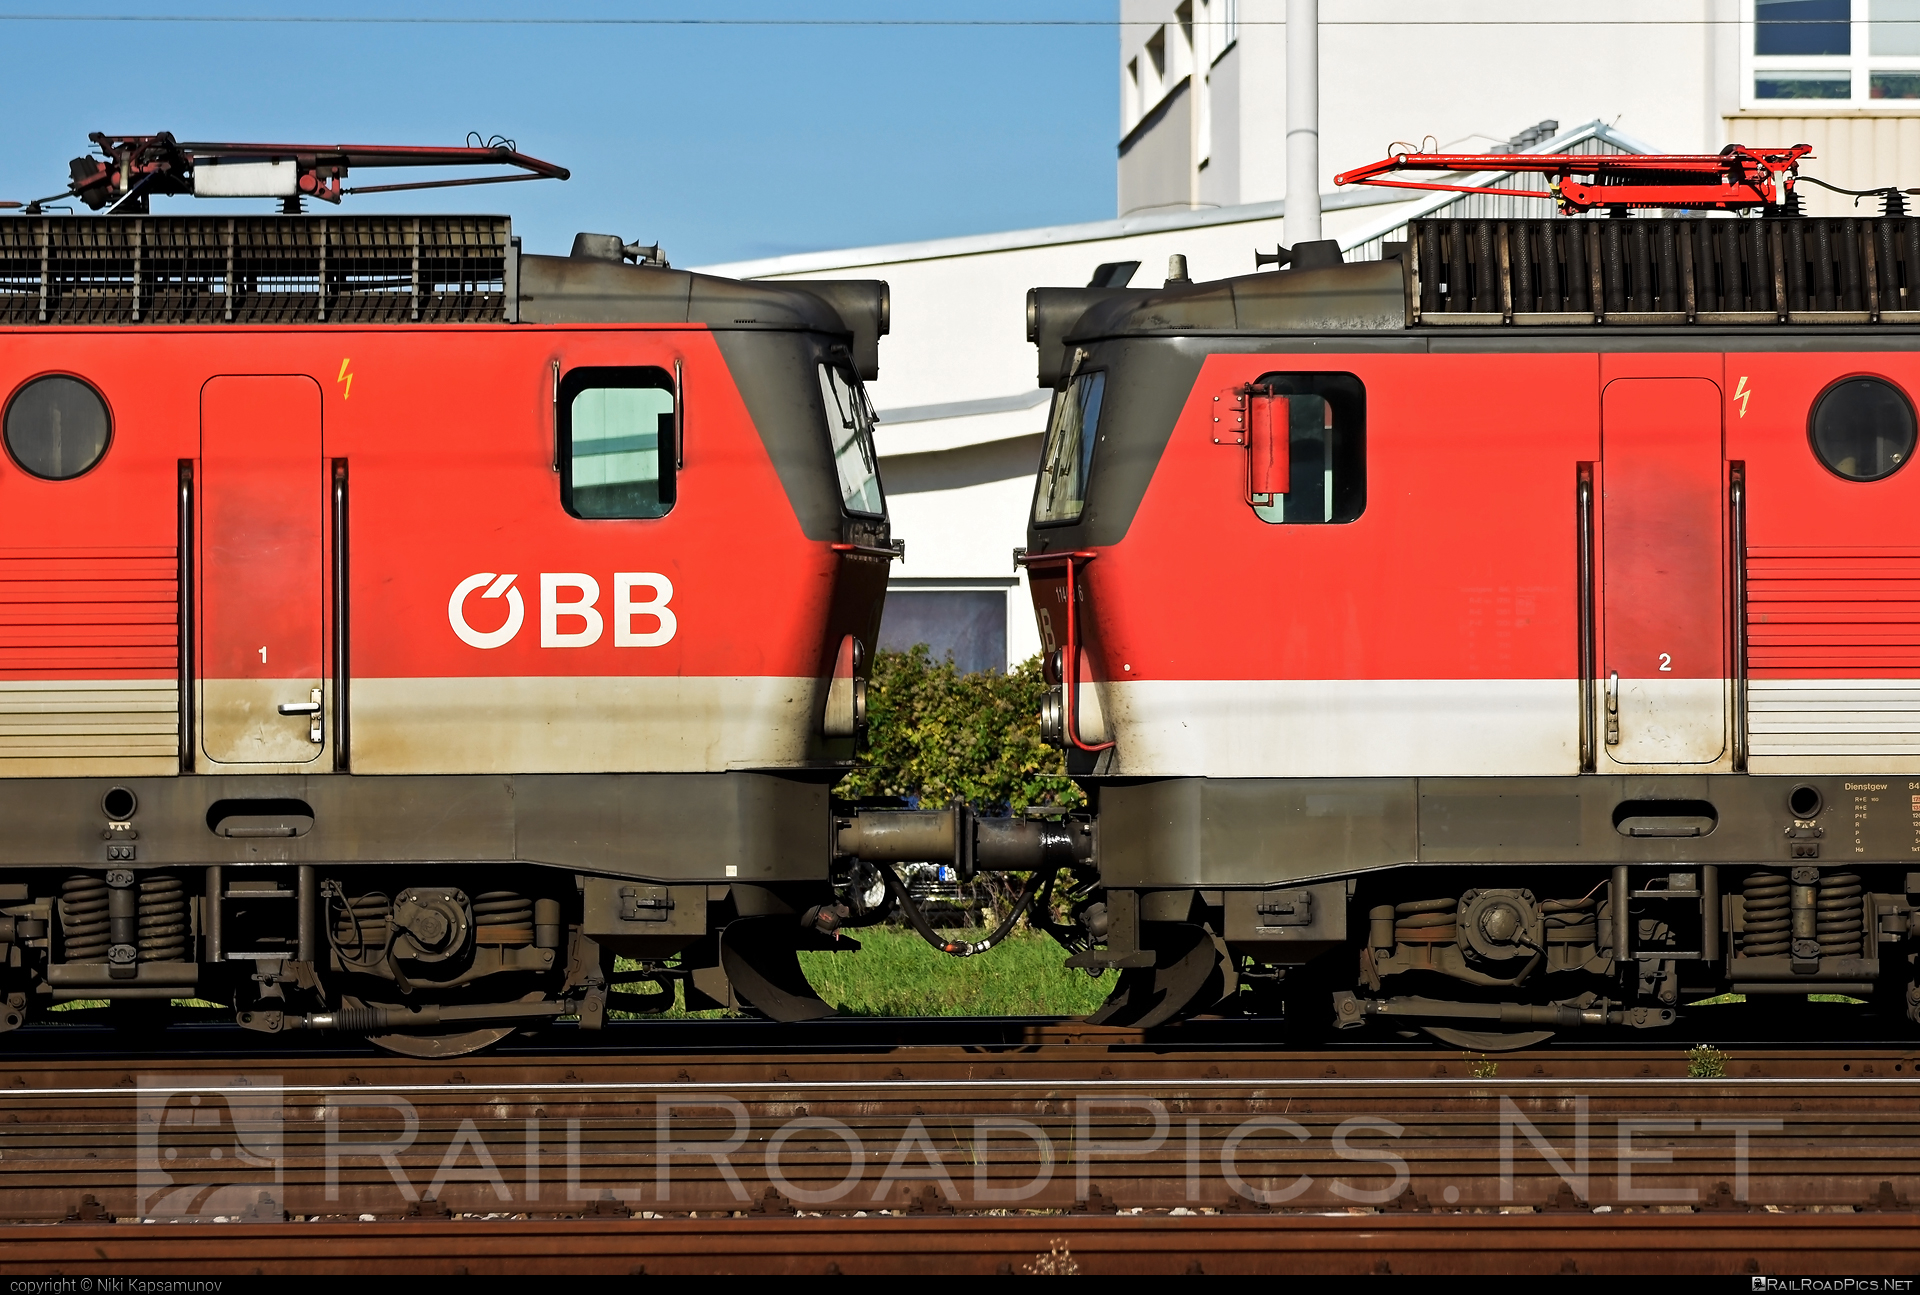 SGP 1144 - 1144 276 operated by Rail Cargo Austria AG #obb #obb1144 #obbClass1144 #osterreichischebundesbahnen #sgp #sgp1144 #simmeringgrazpauker